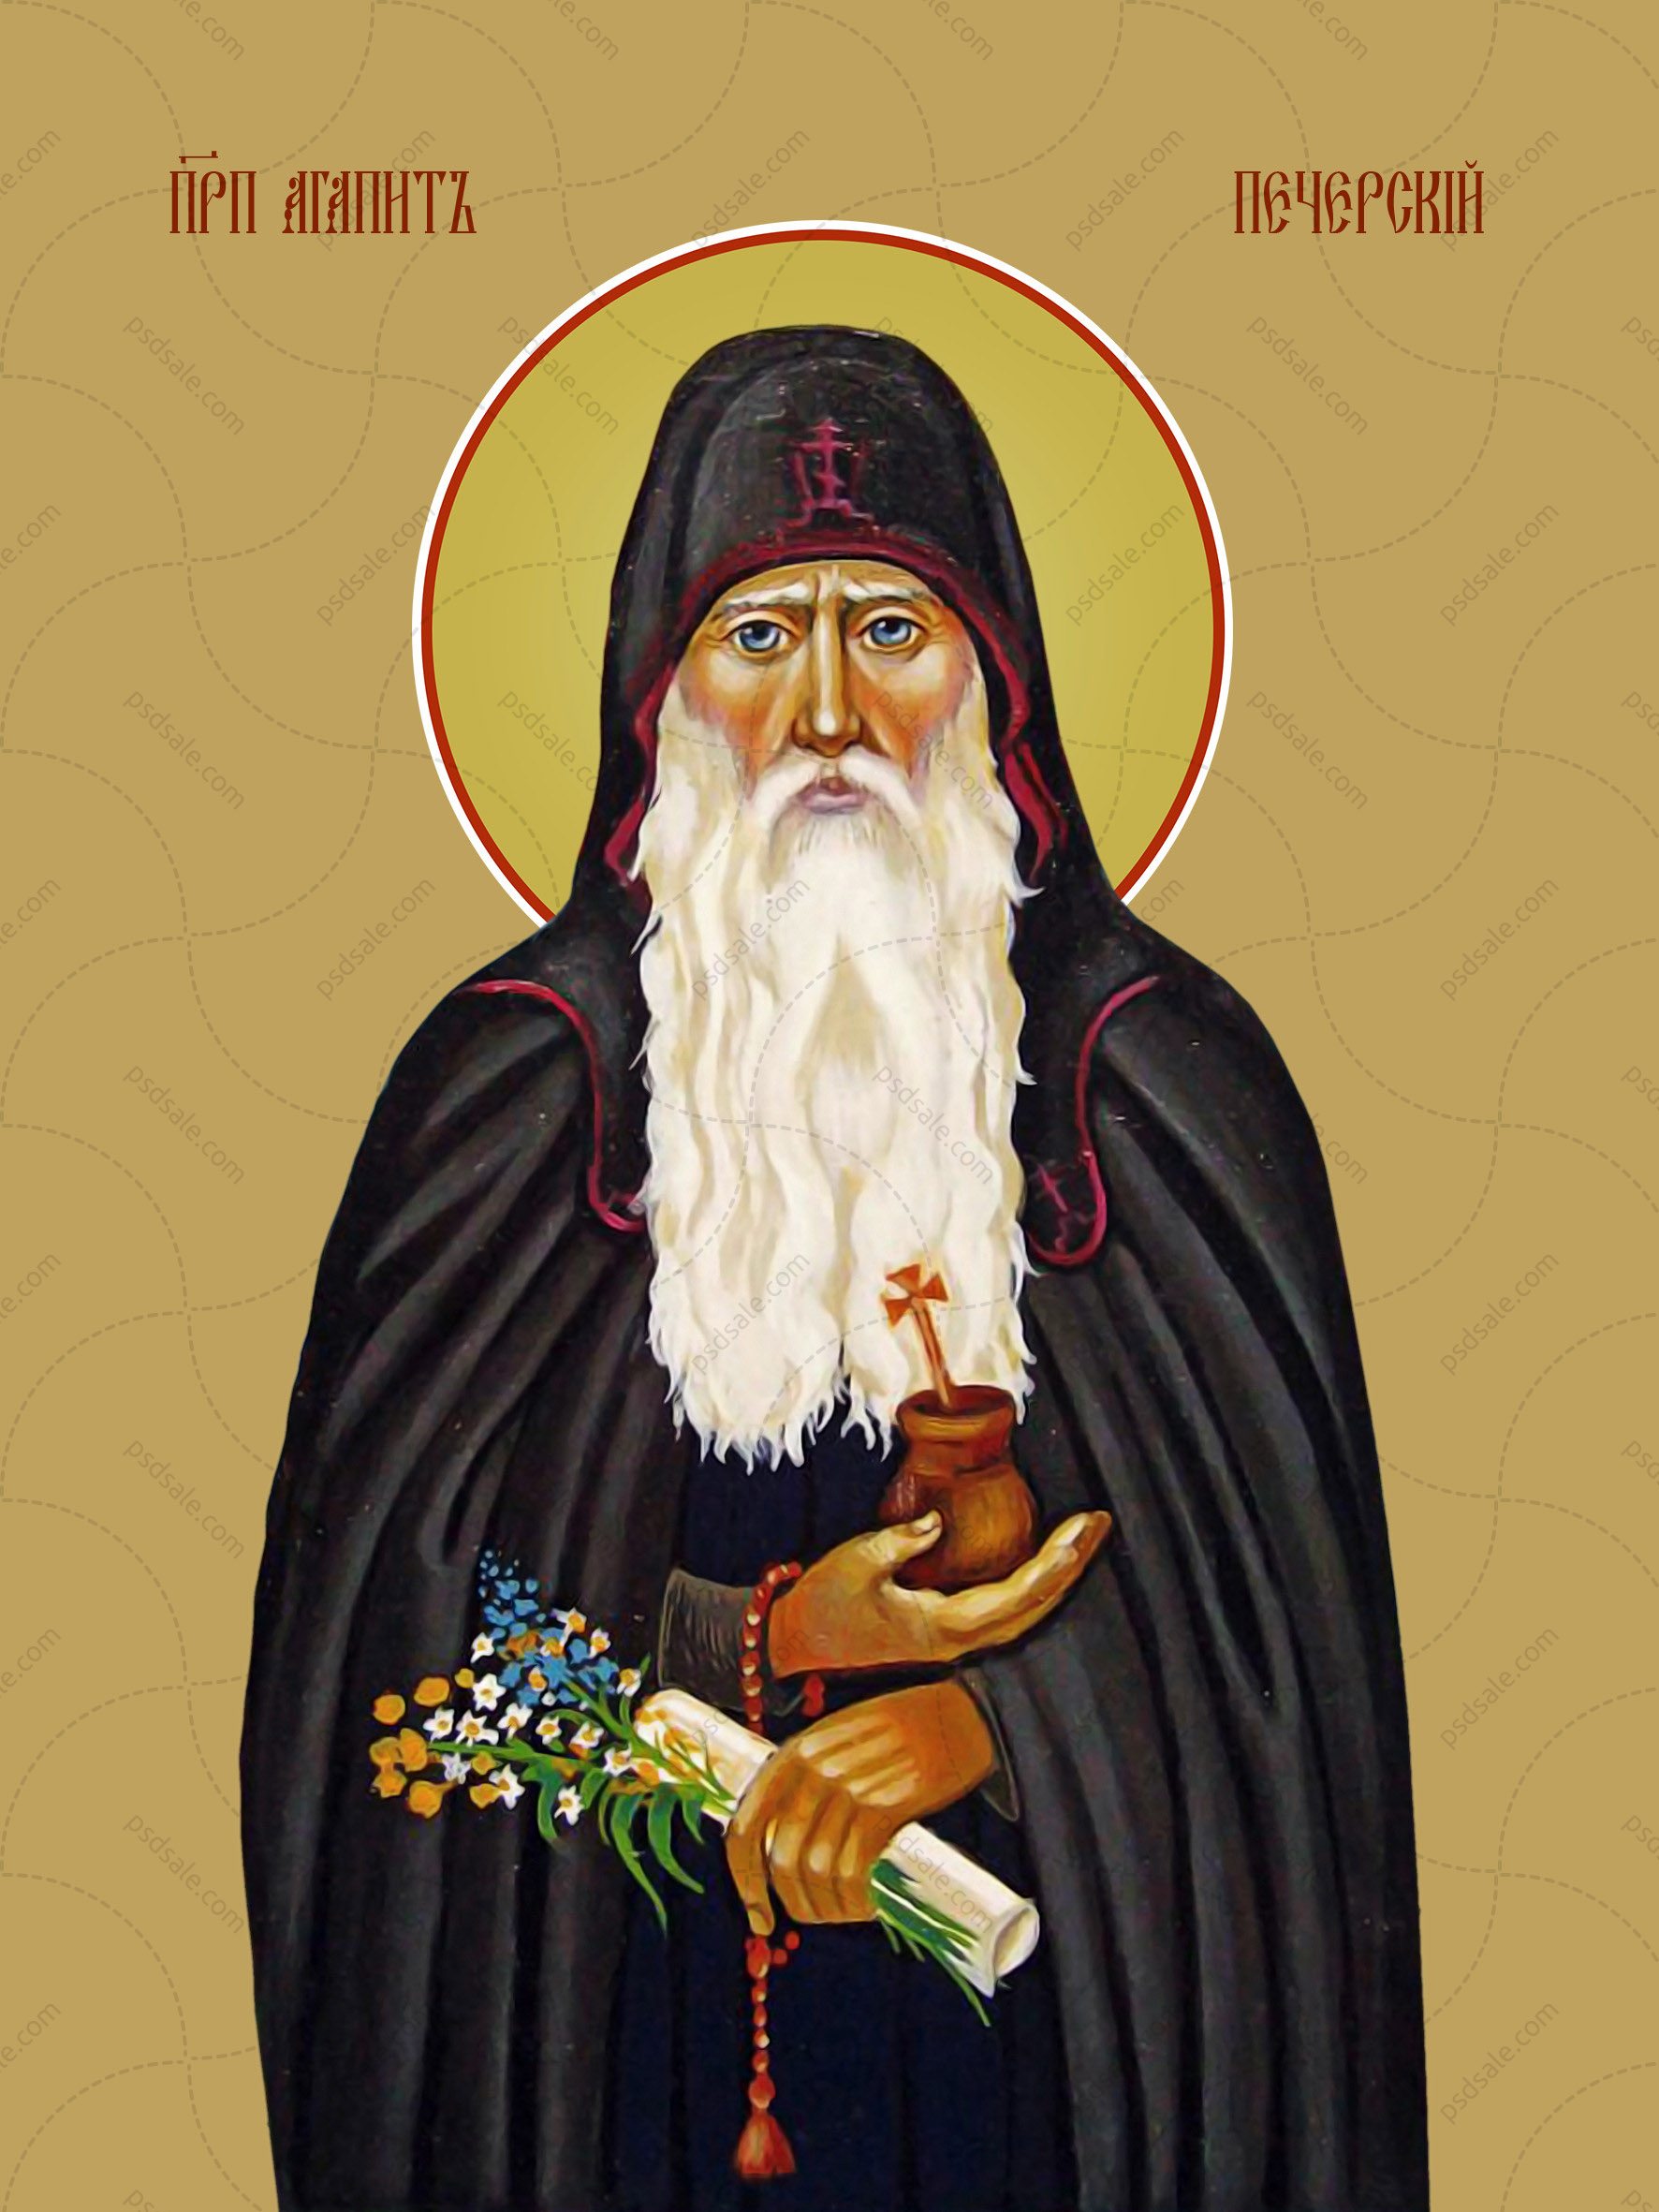 Agapit of Kiev-Pechersk, reverend